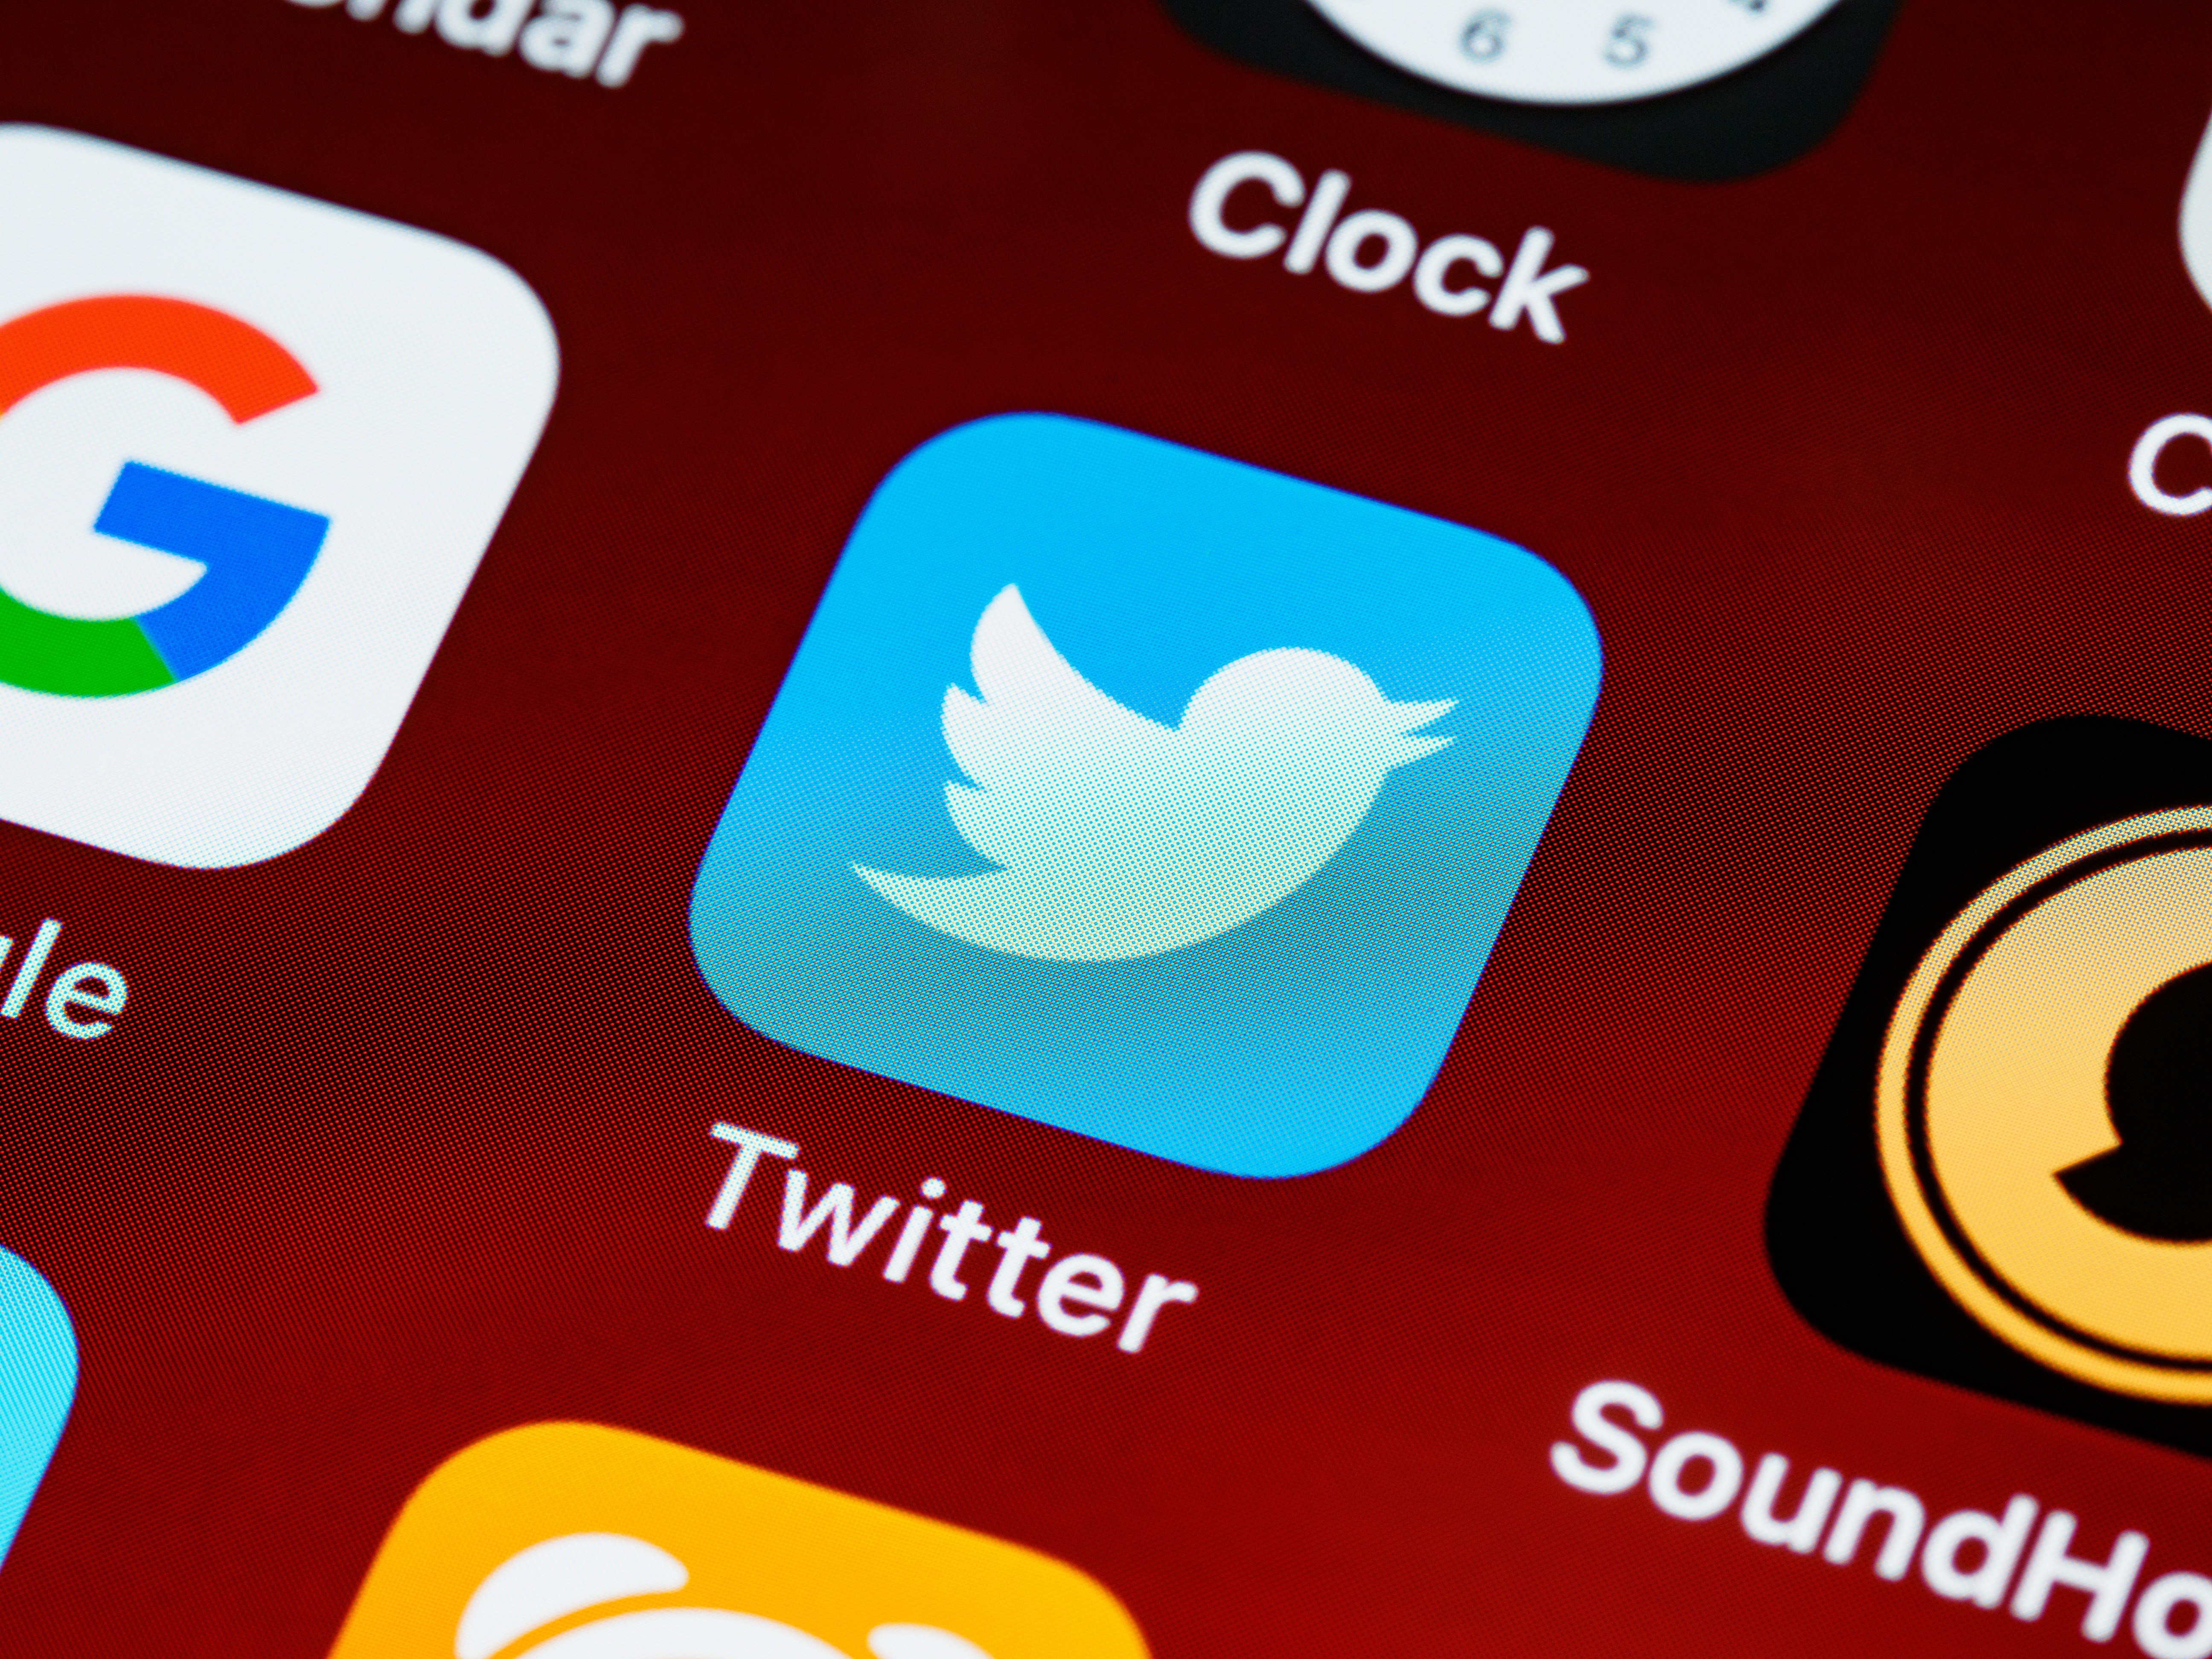 Facua denúncia a Twitter per modificar les seues condicions sense notificació als usuaris